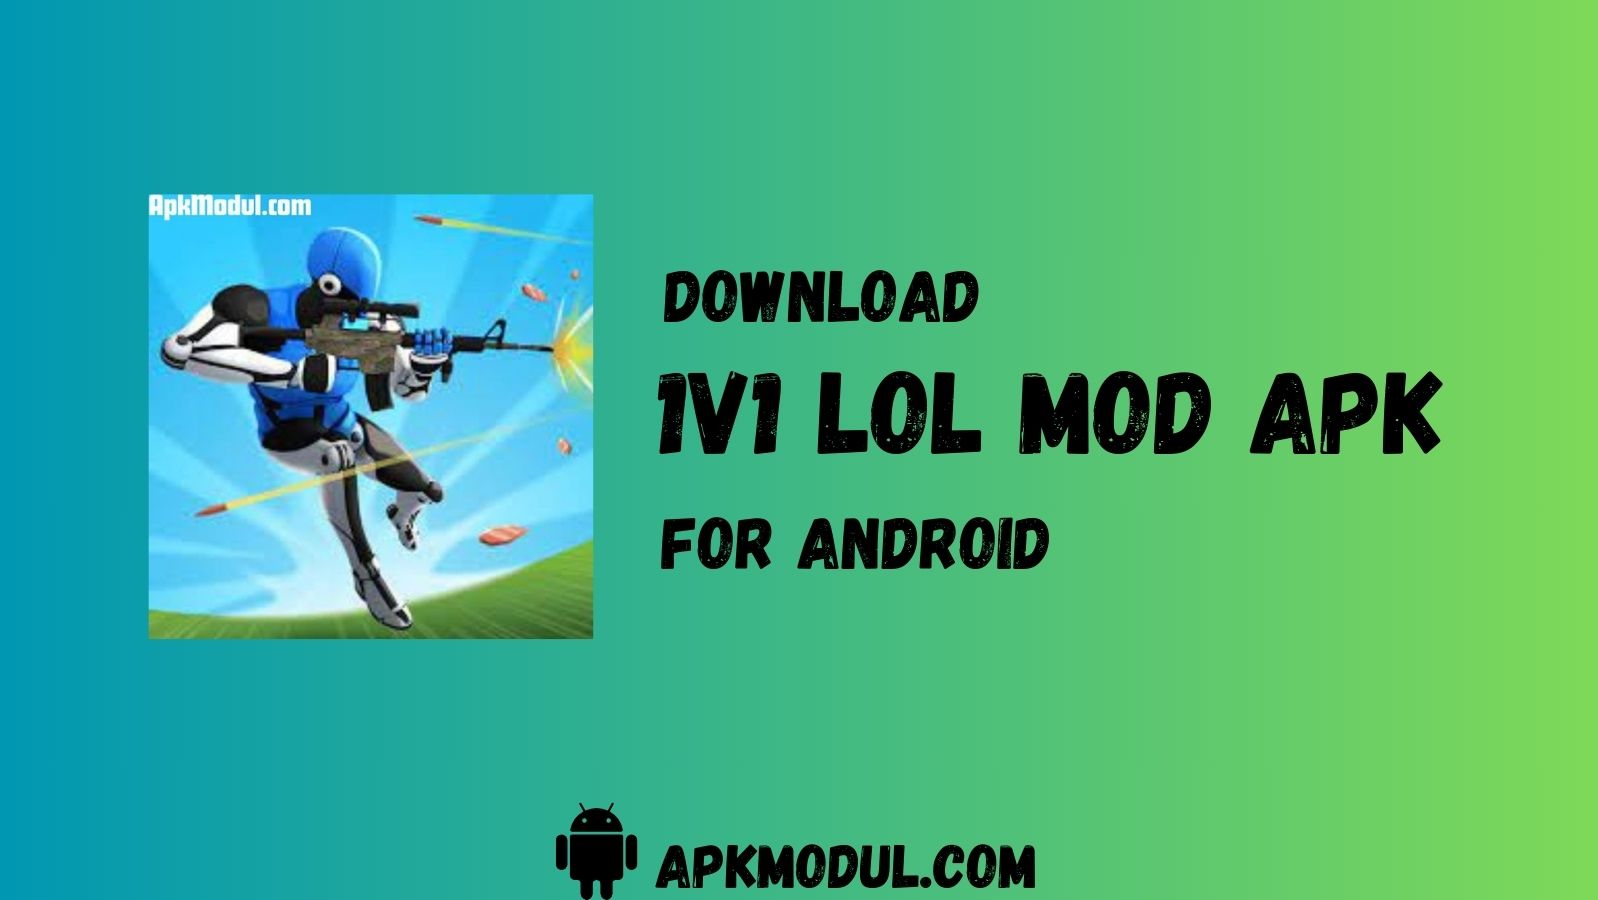 1v1 lol mod app 